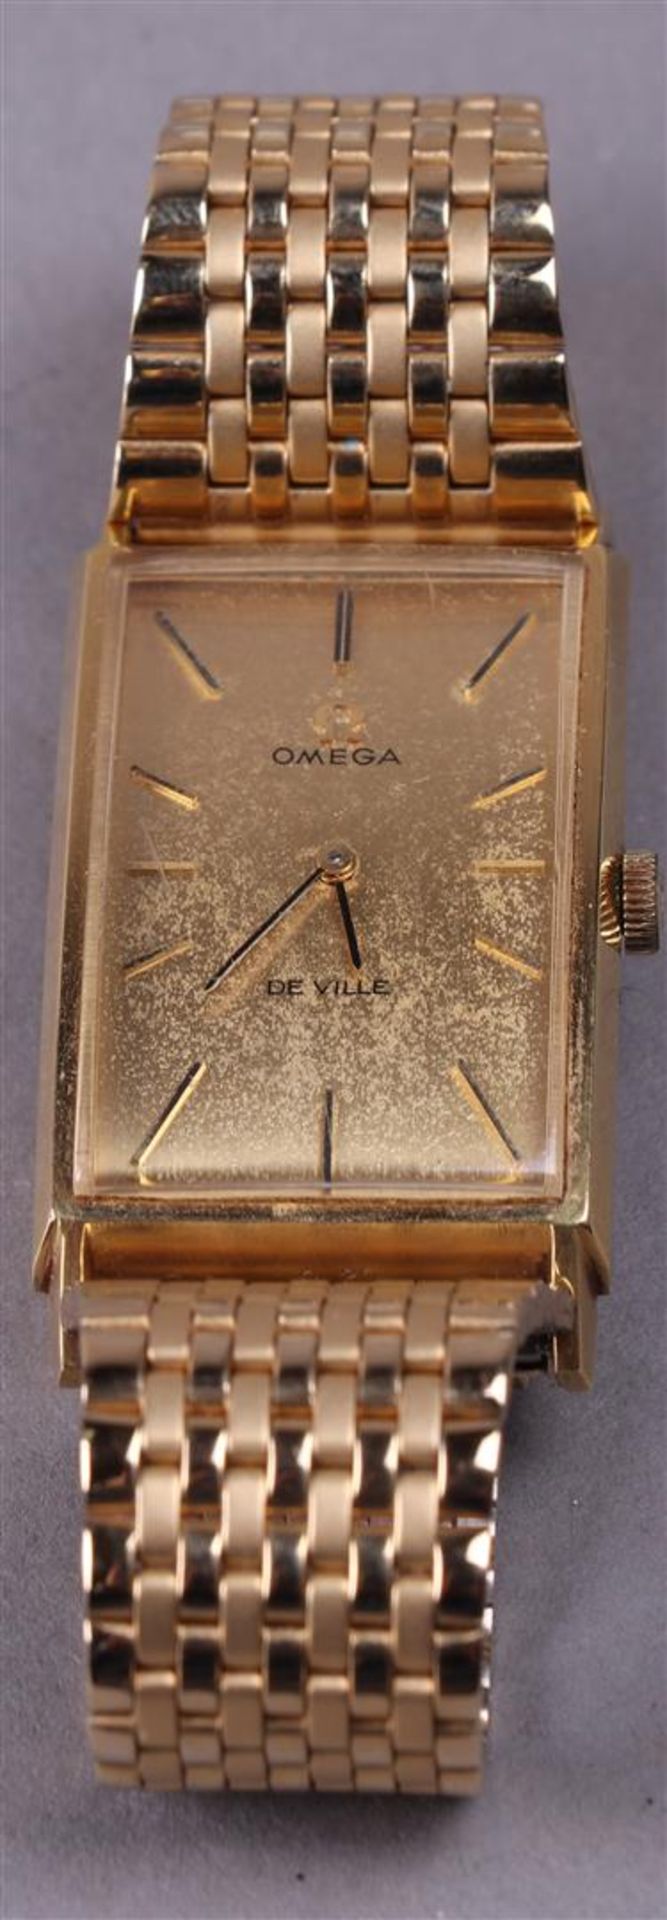 An Omega De Ville gold-plated men's wristwatch, hand-wound. Including original box - Bild 5 aus 13